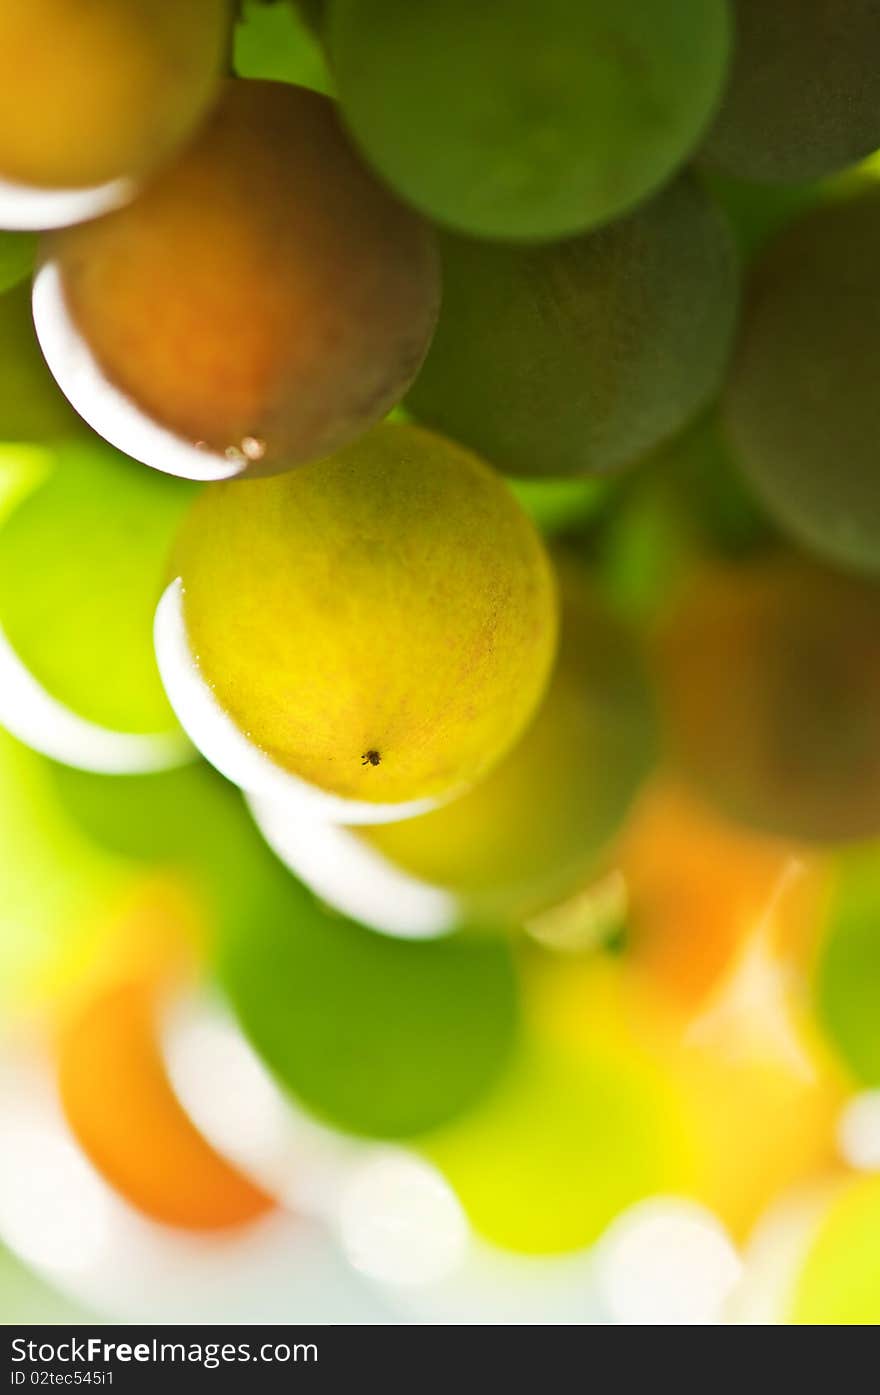 Multi colored grape close up